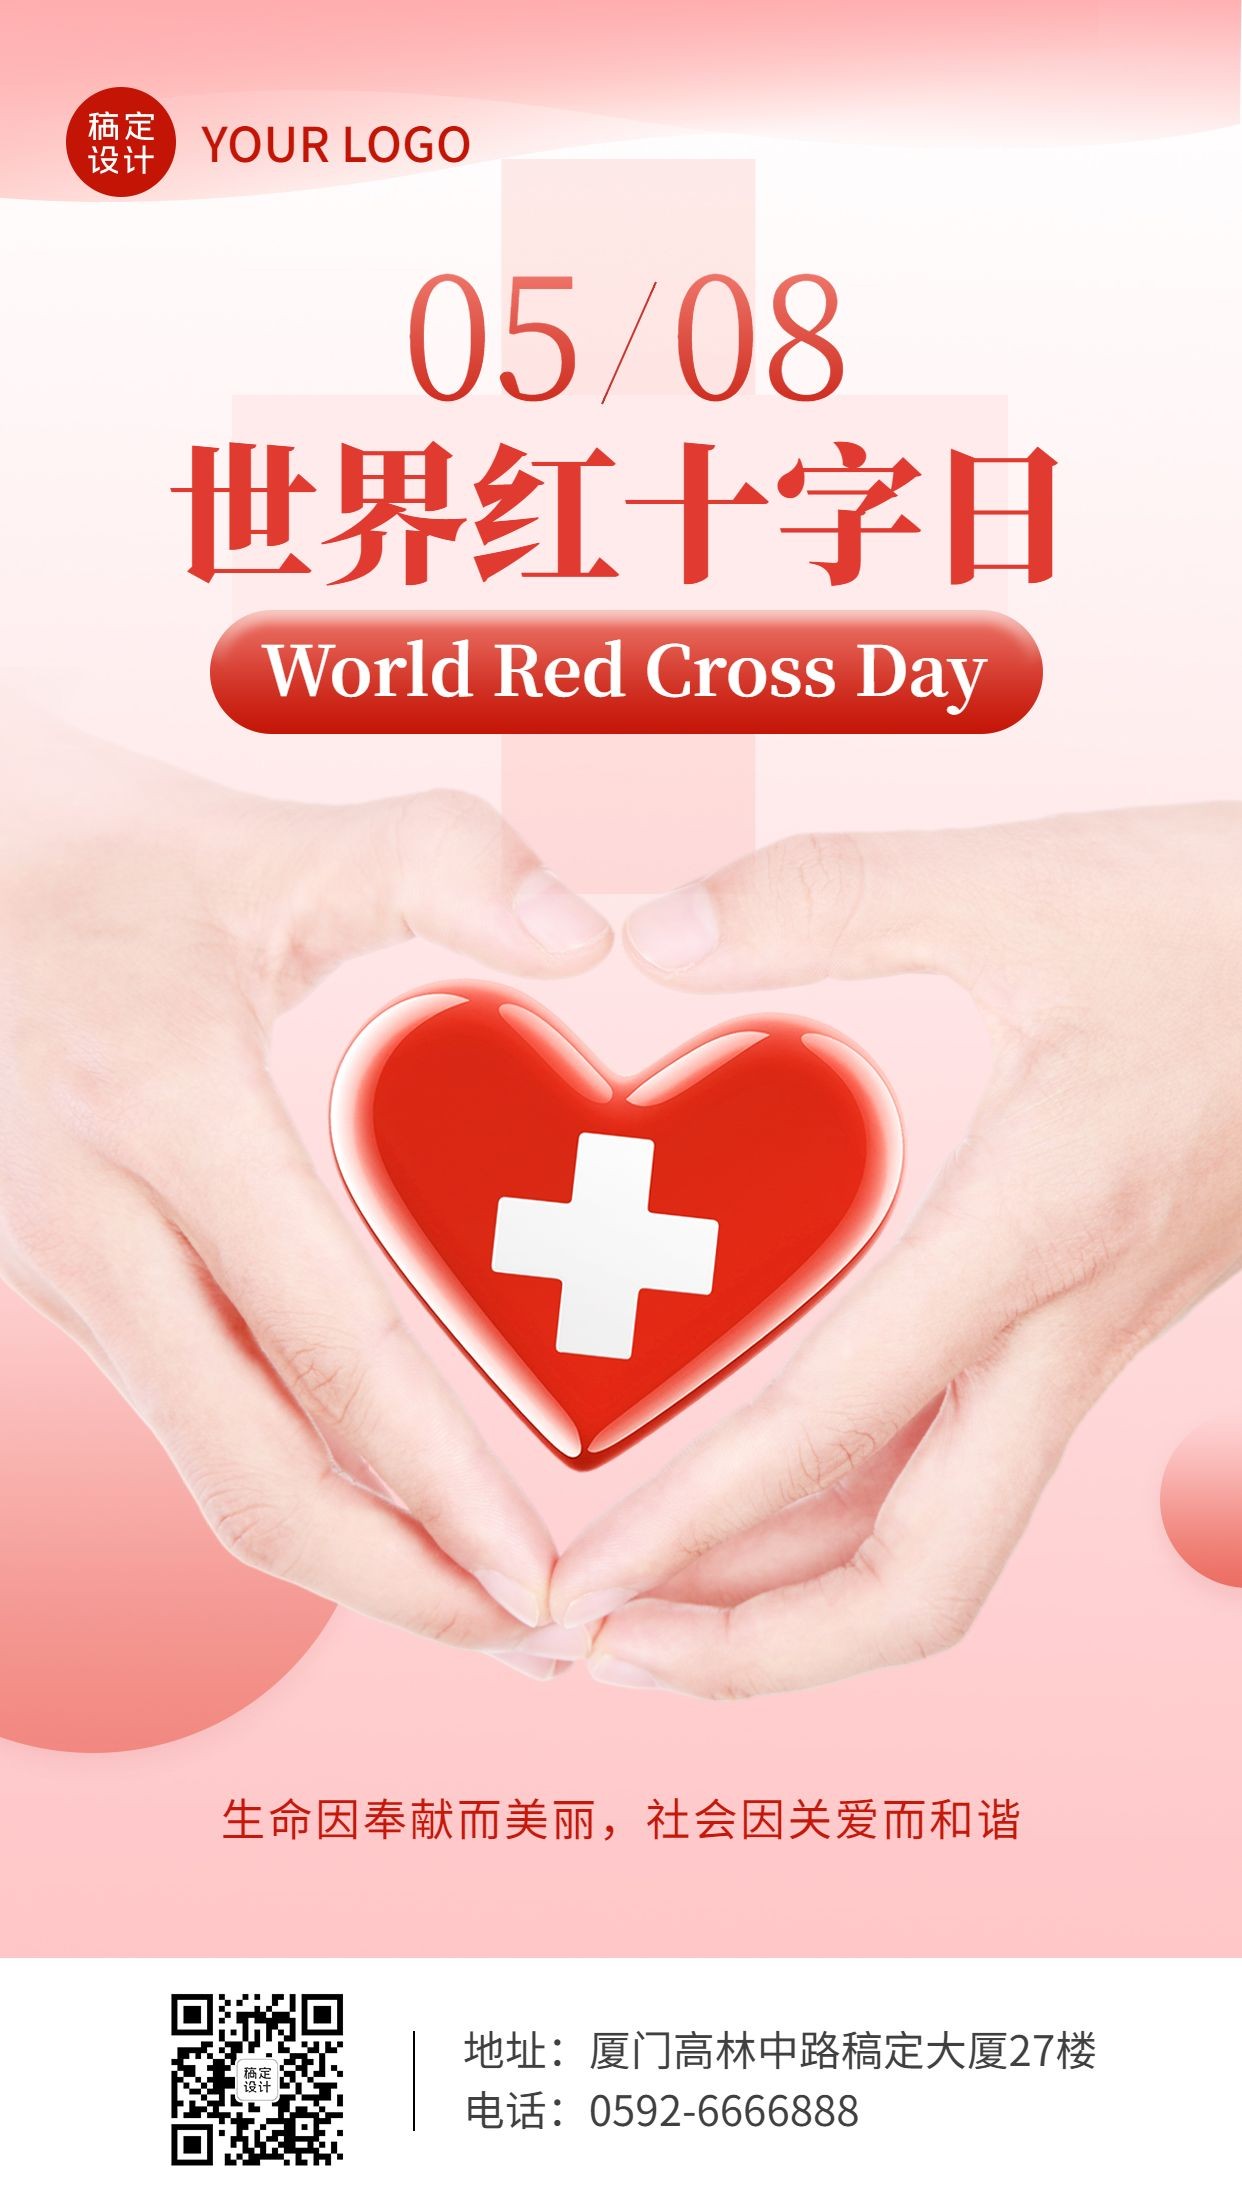 世界红十字日节日宣传手机海报